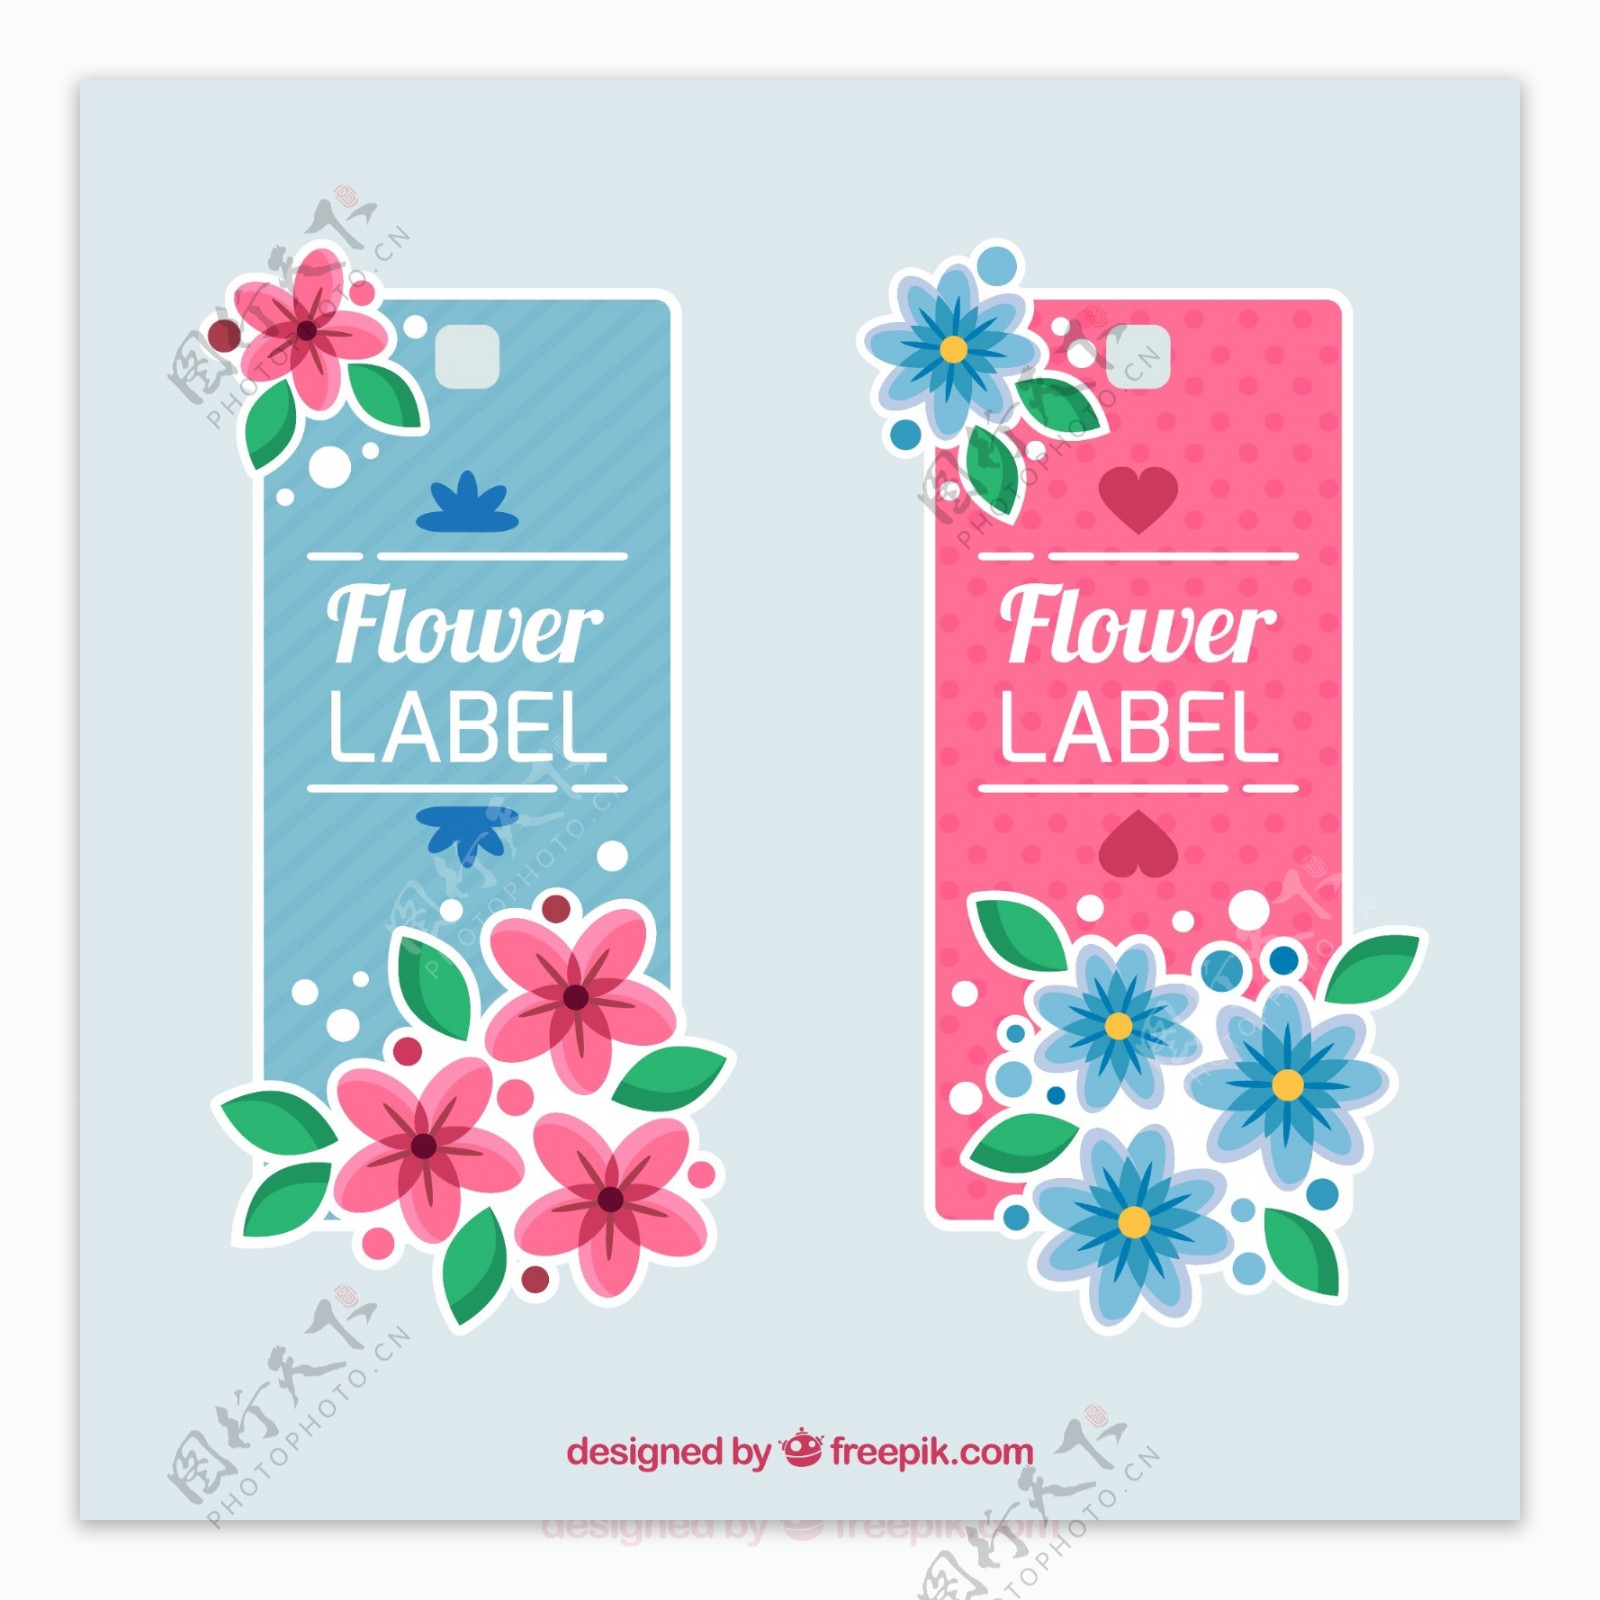 梦幻般的花卉边框标签平面设计素材